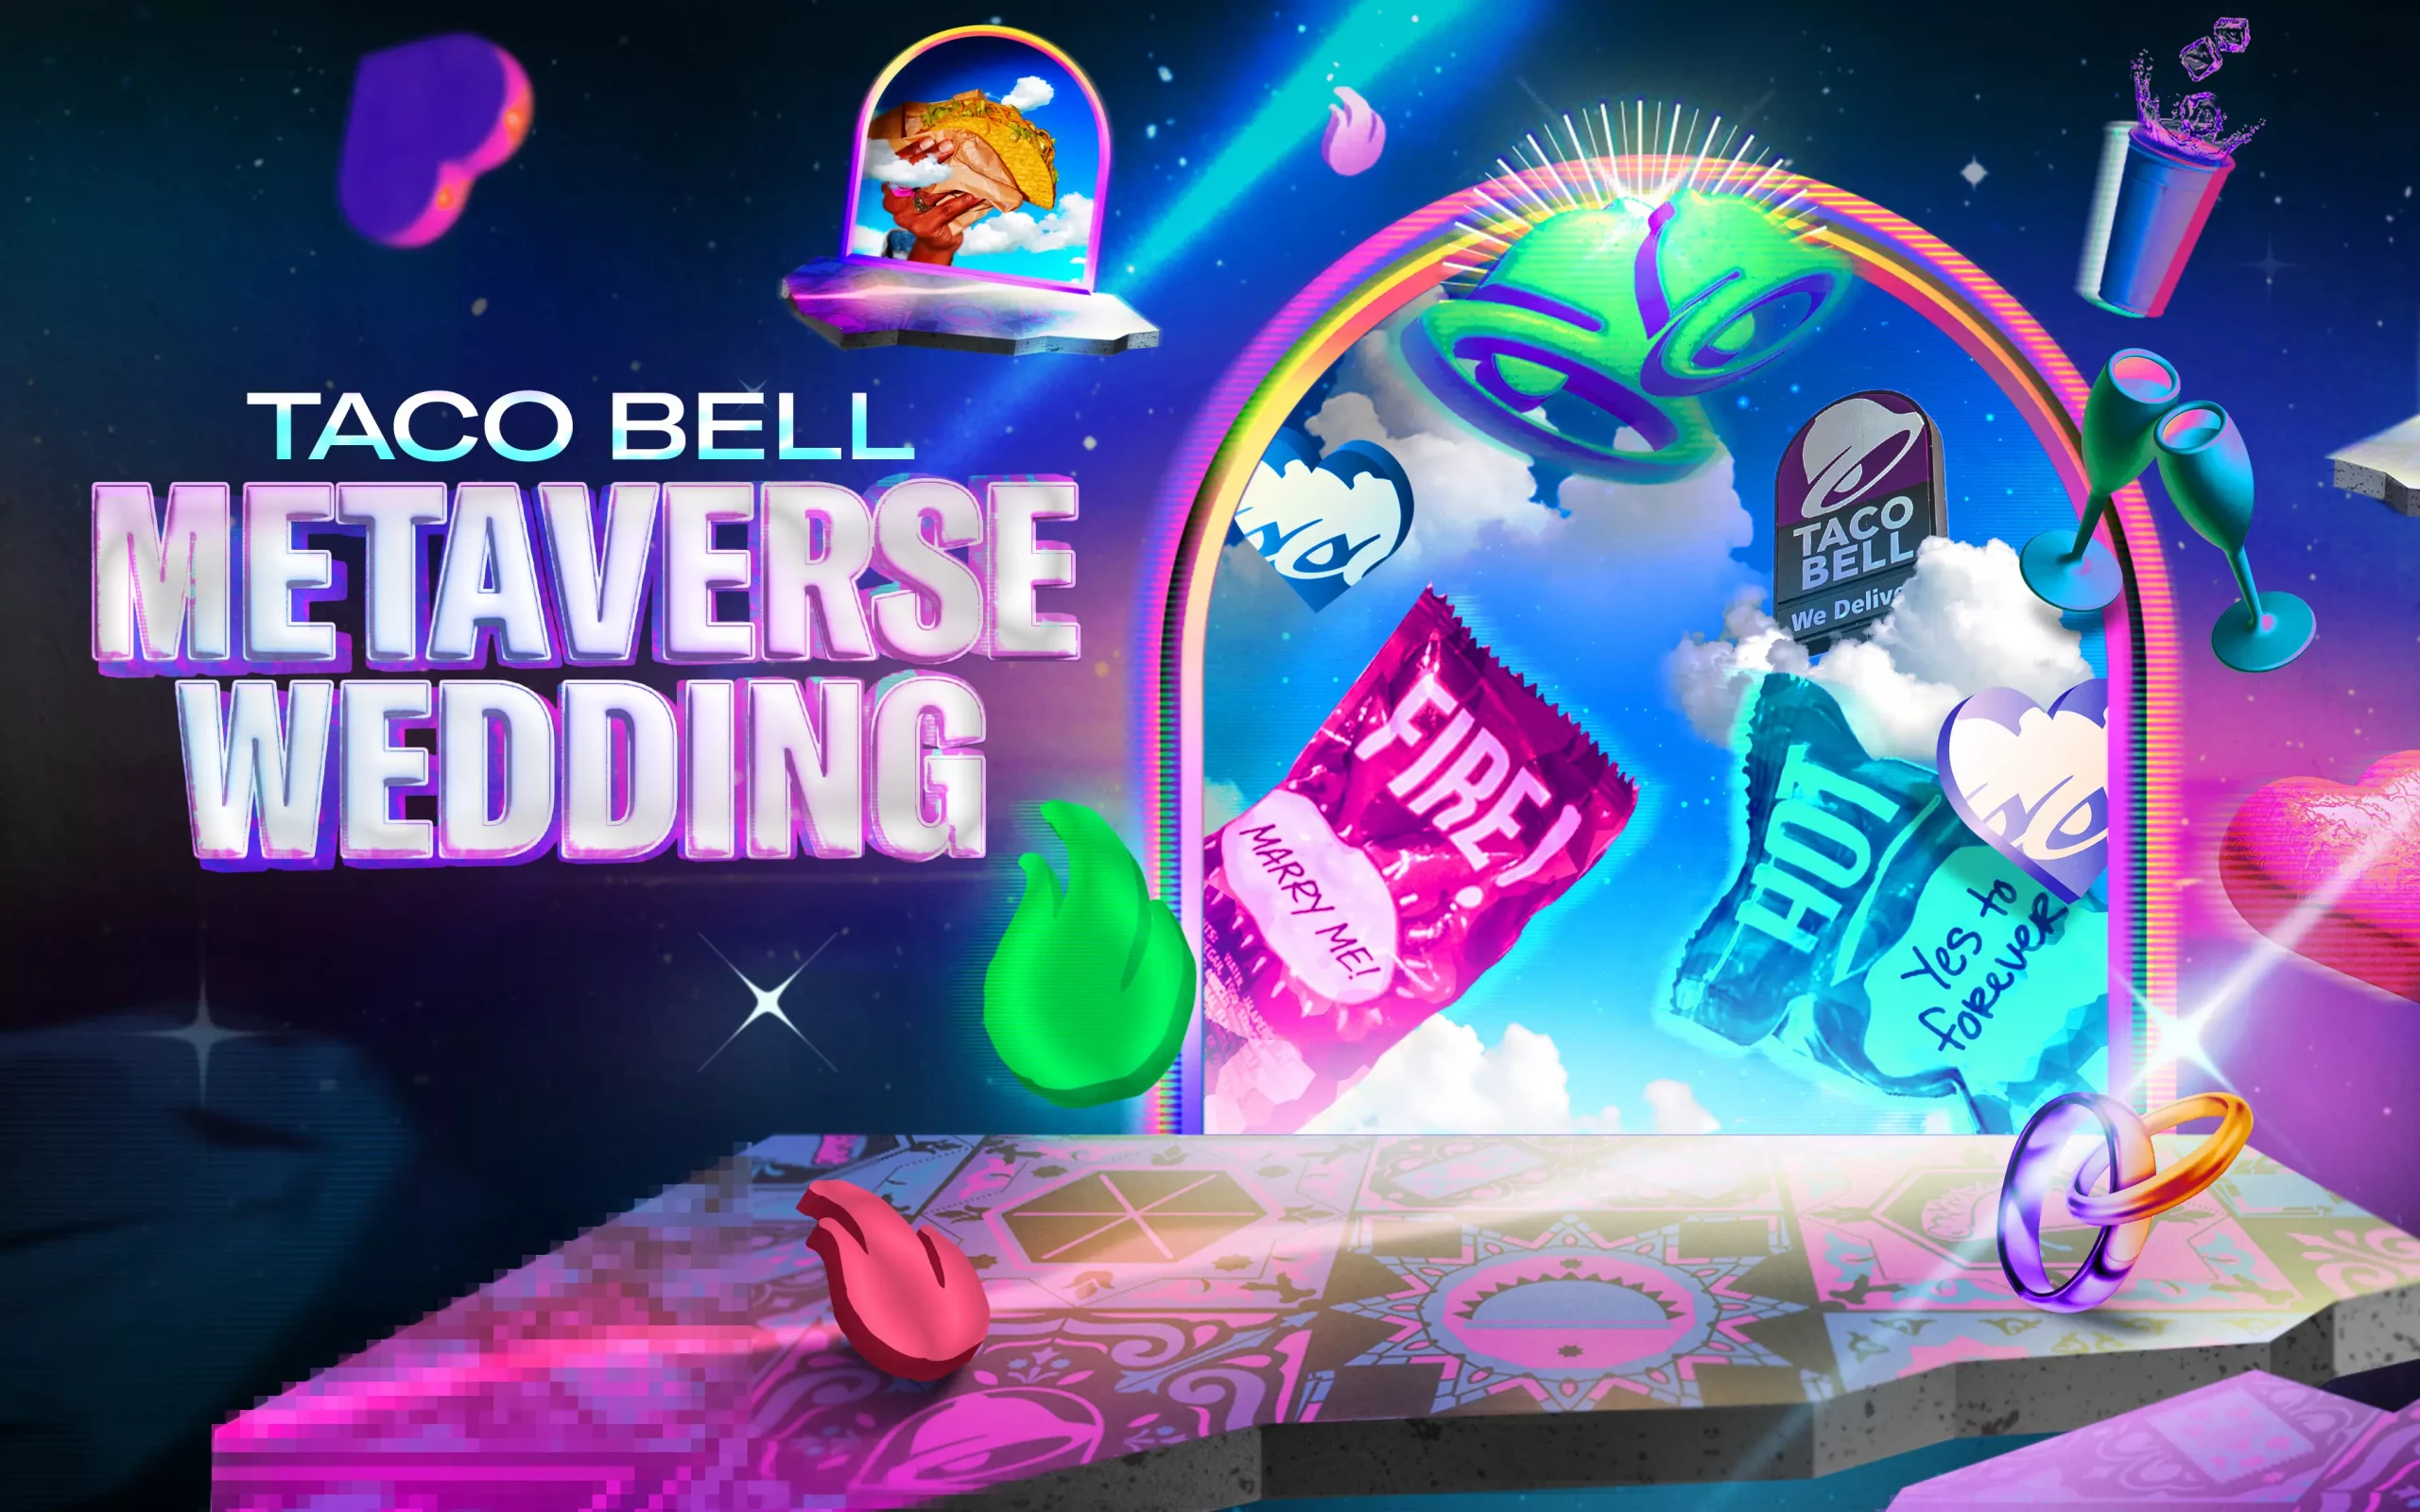 taco bell metaverse wedding hero